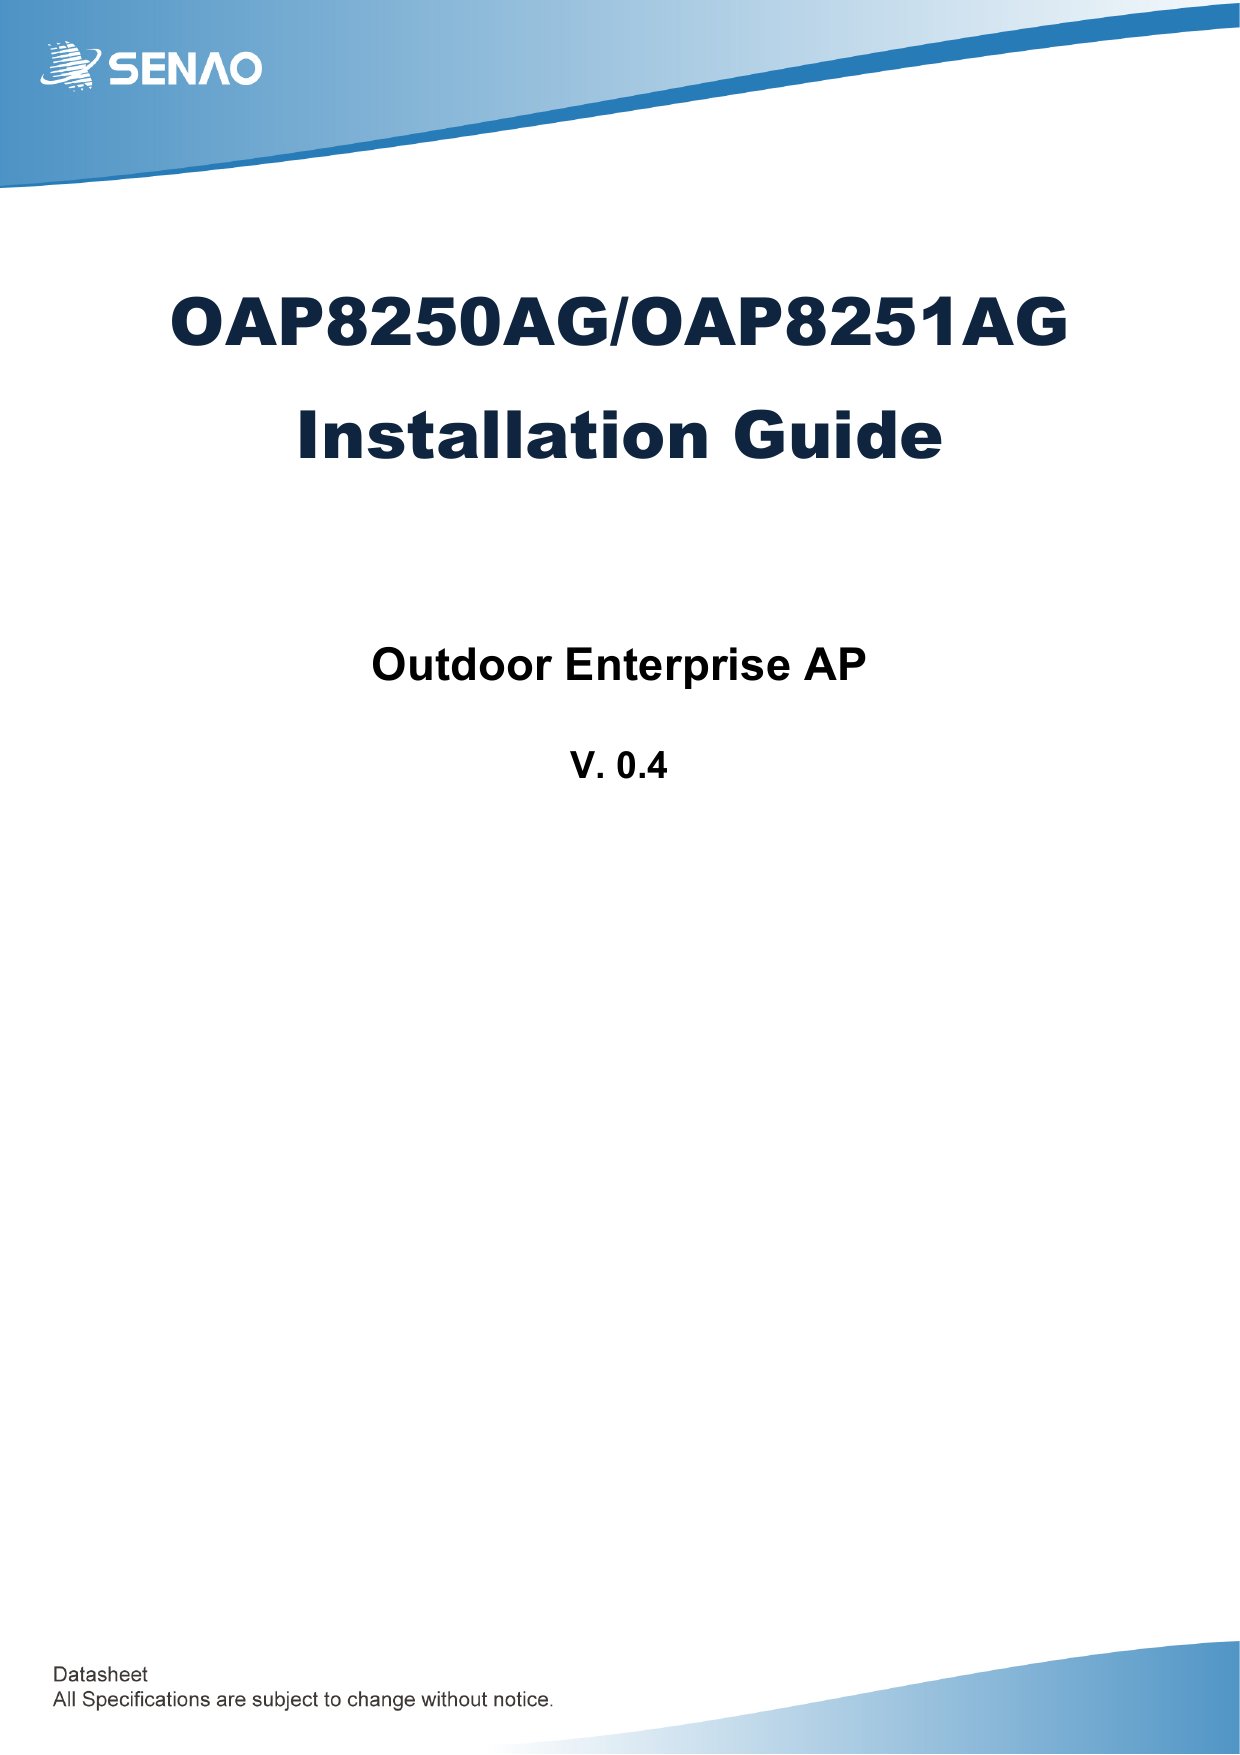   OAP8250AG/OAP8251AG Installation Guide   Outdoor Enterprise AP  V. 0.4         